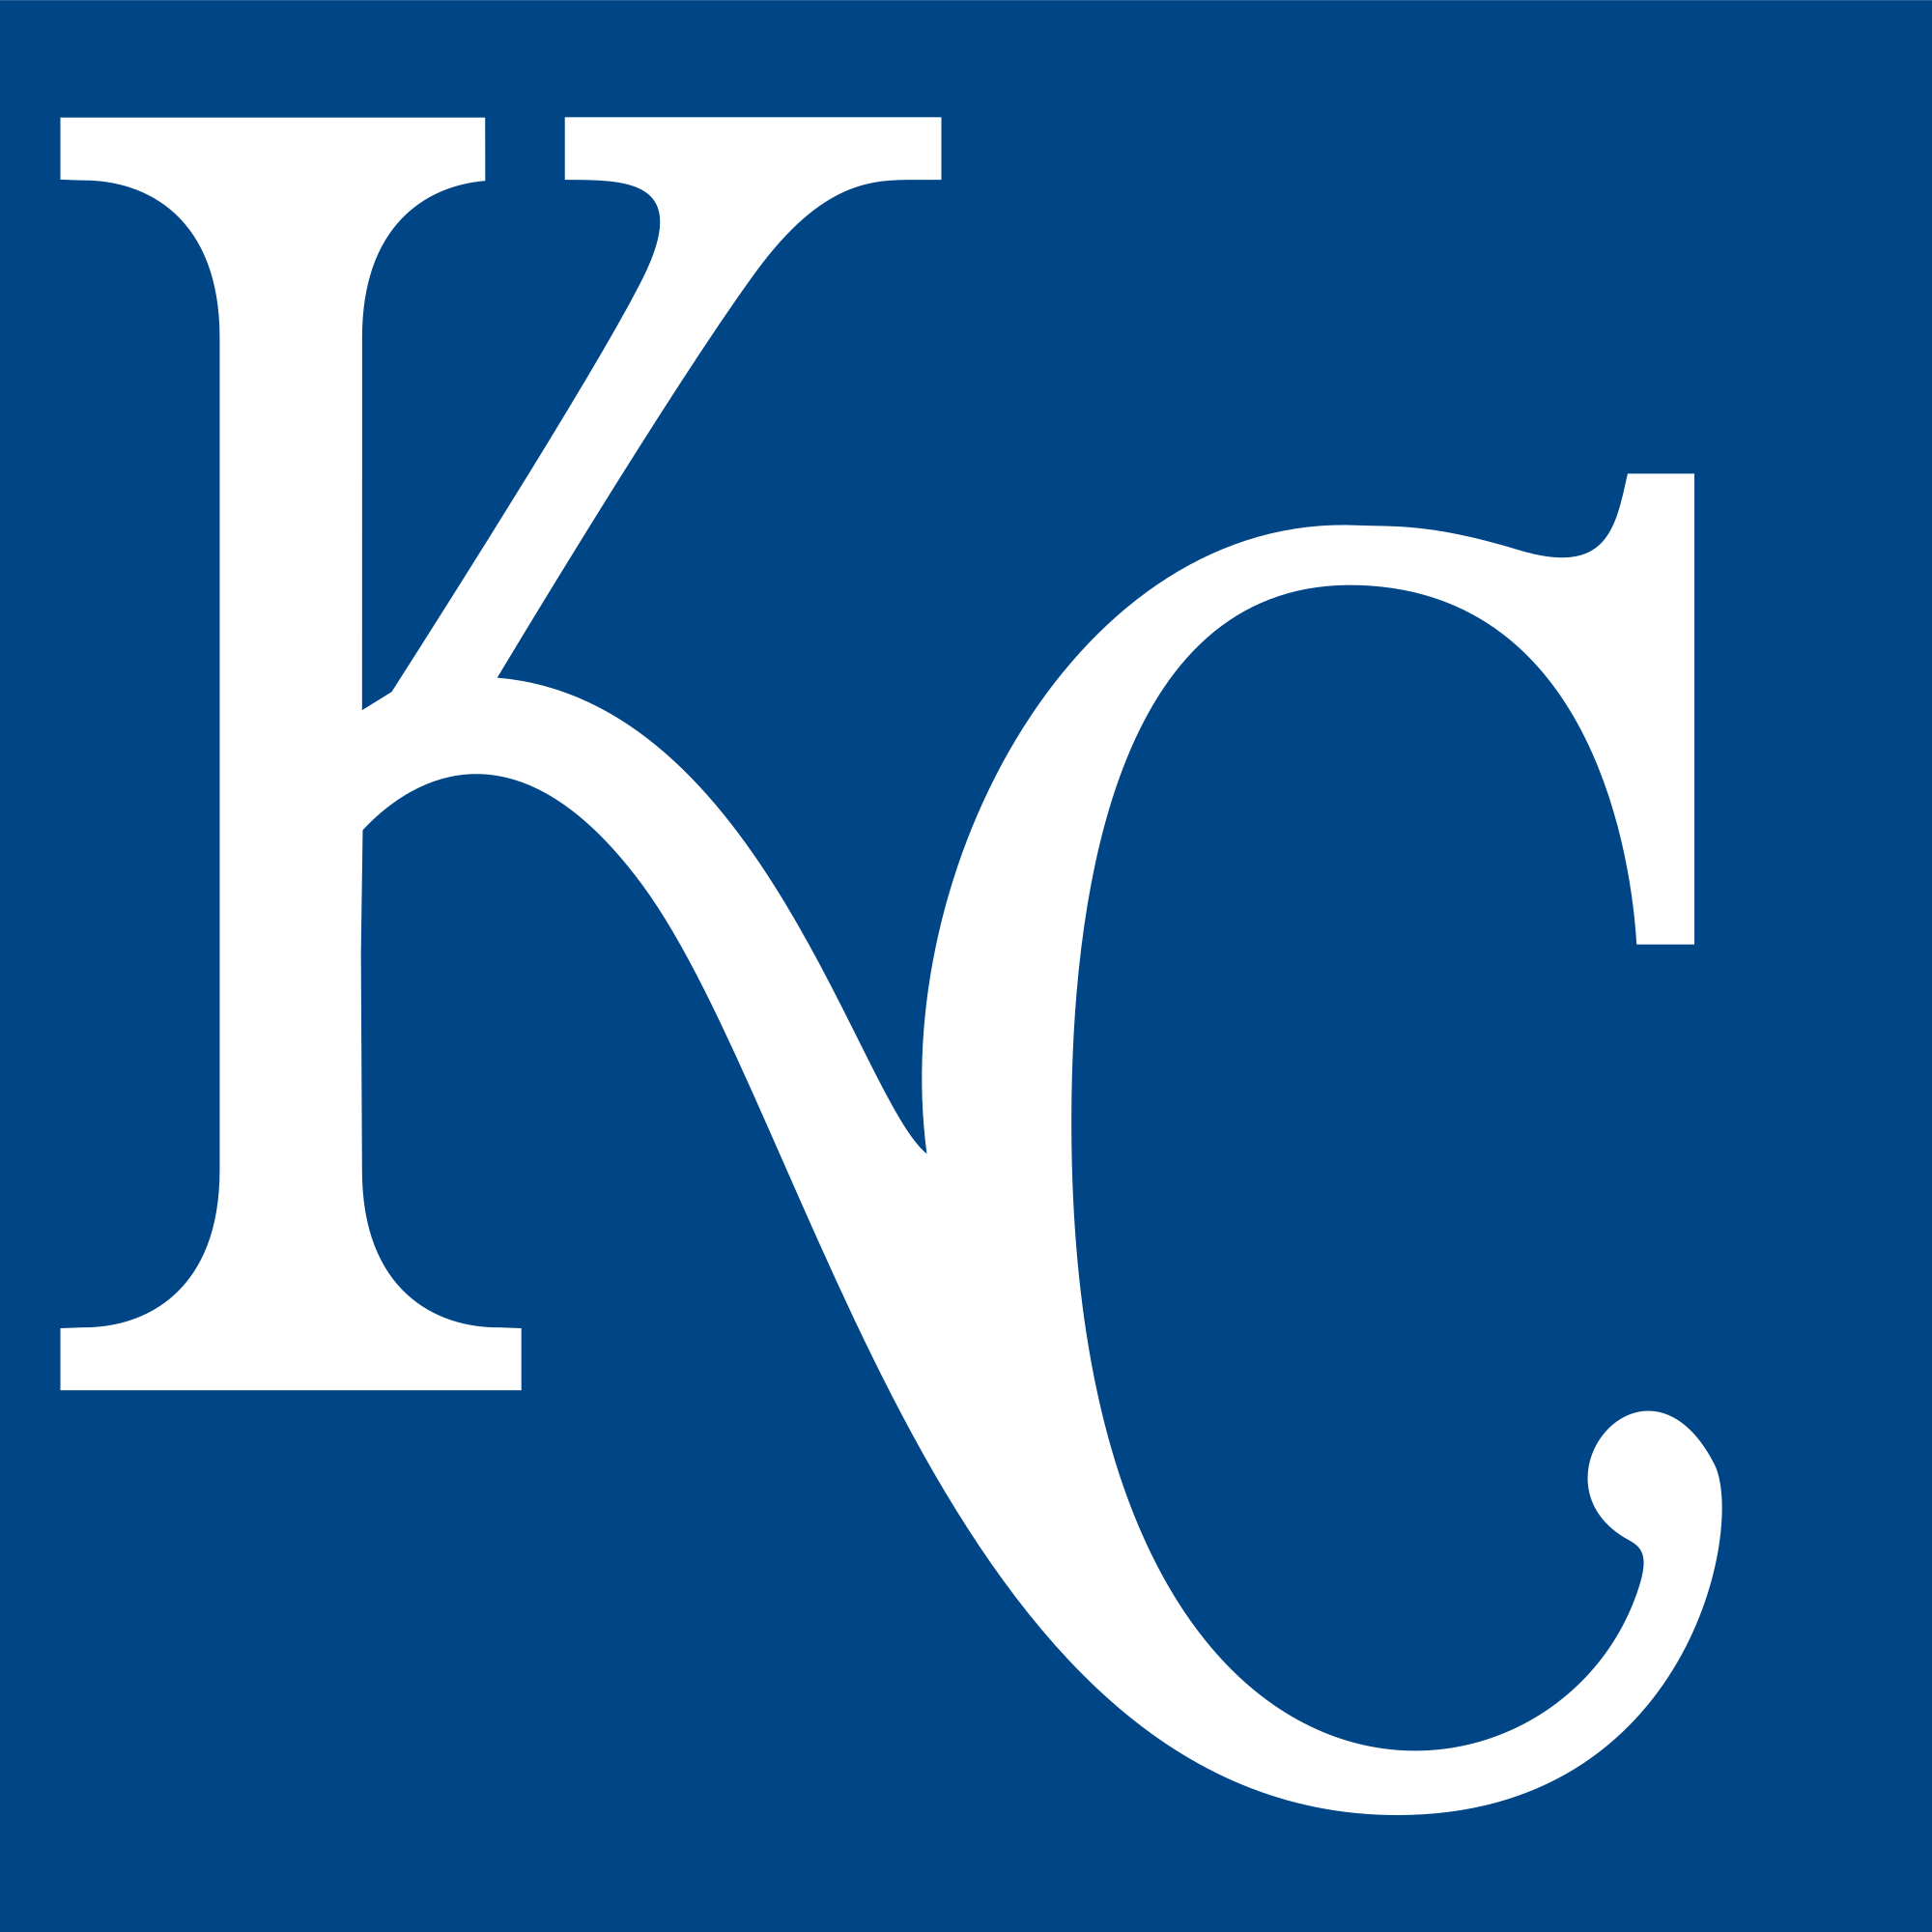 Royals Logo - Kansas City Royals Insignia.svg